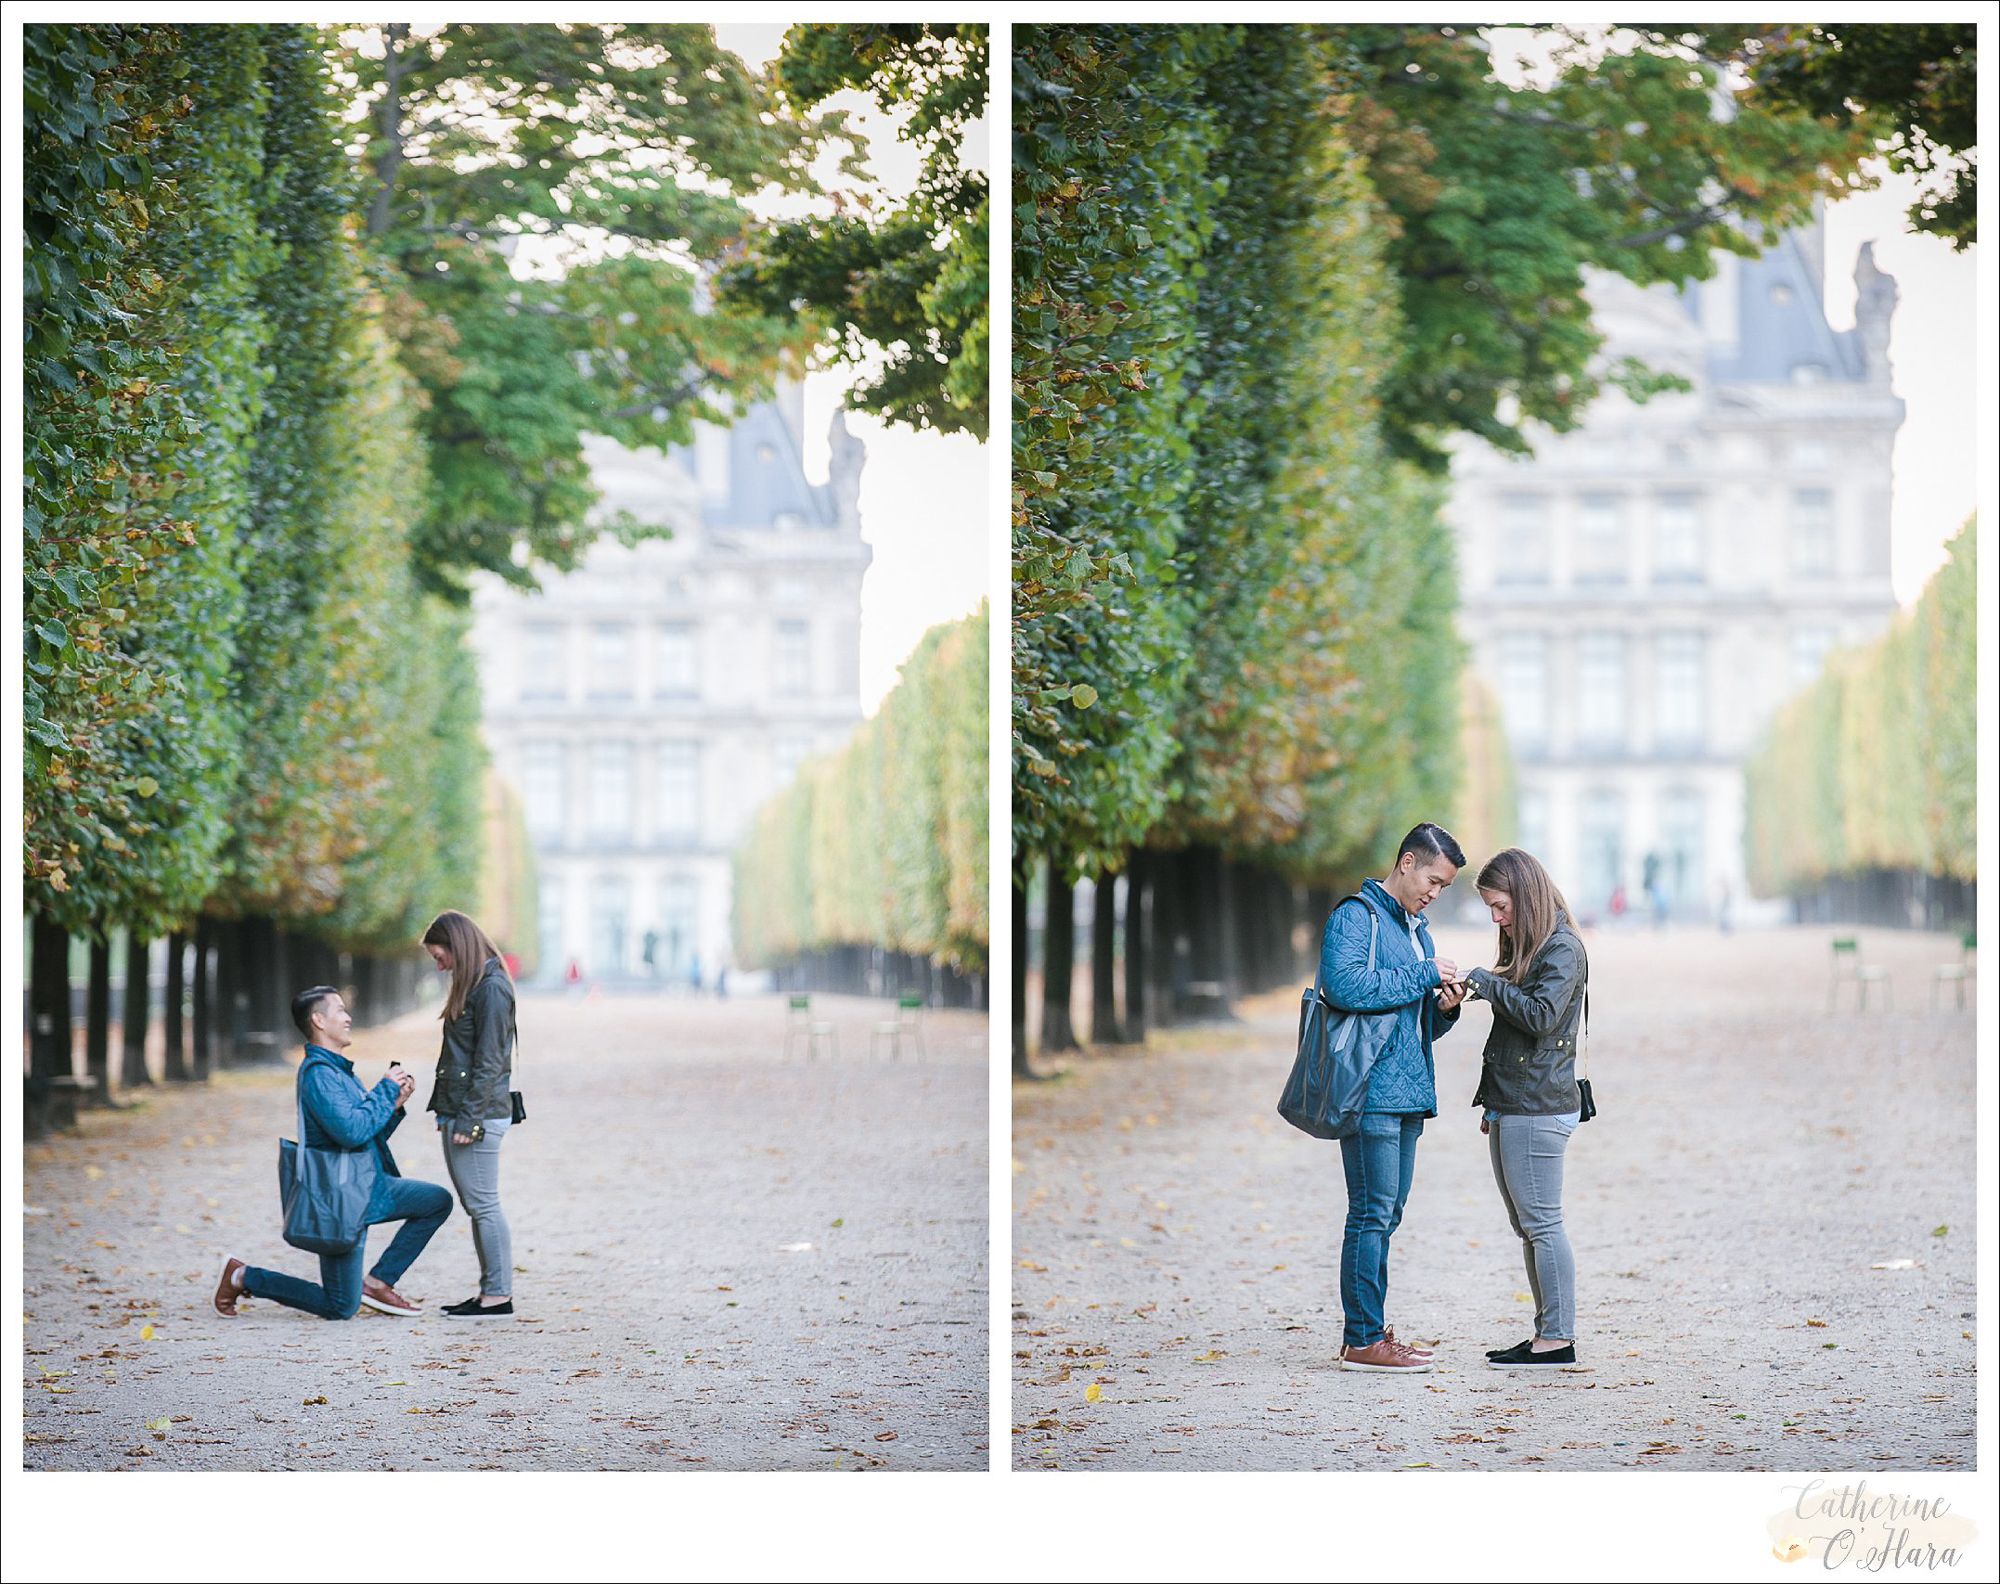 surprise proposal engagement photographer paris france-24.jpg